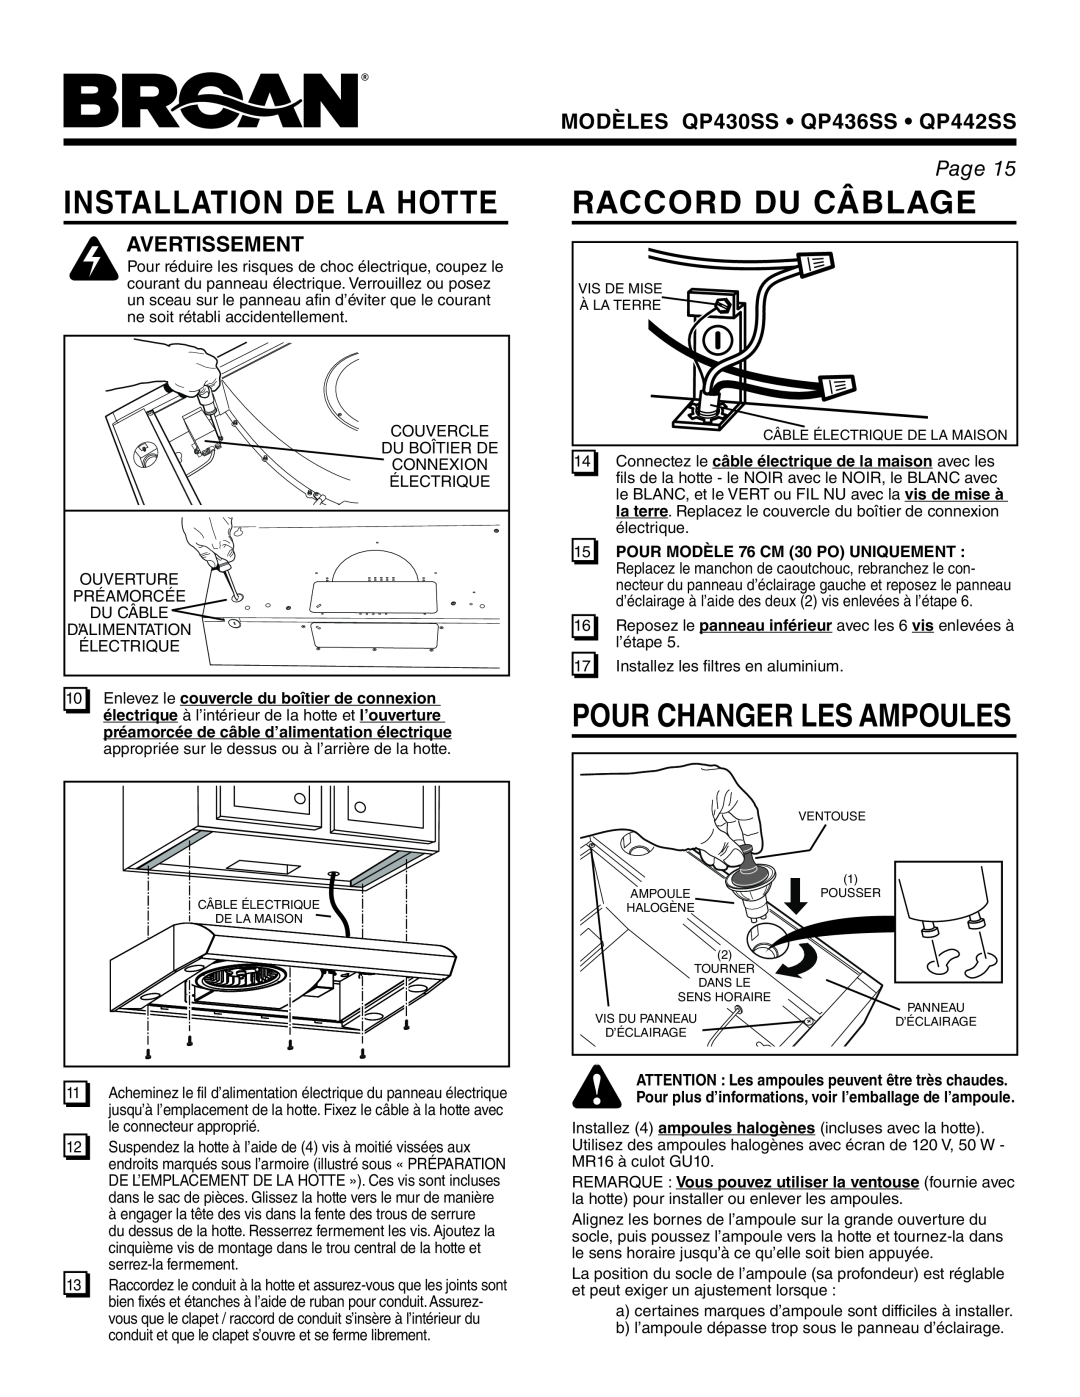 Broan QP430SS, QP436SS warranty Installation De La Hotte, Raccord Du Câblage, Pour Changer Les Ampoules, Avertissement, Page 